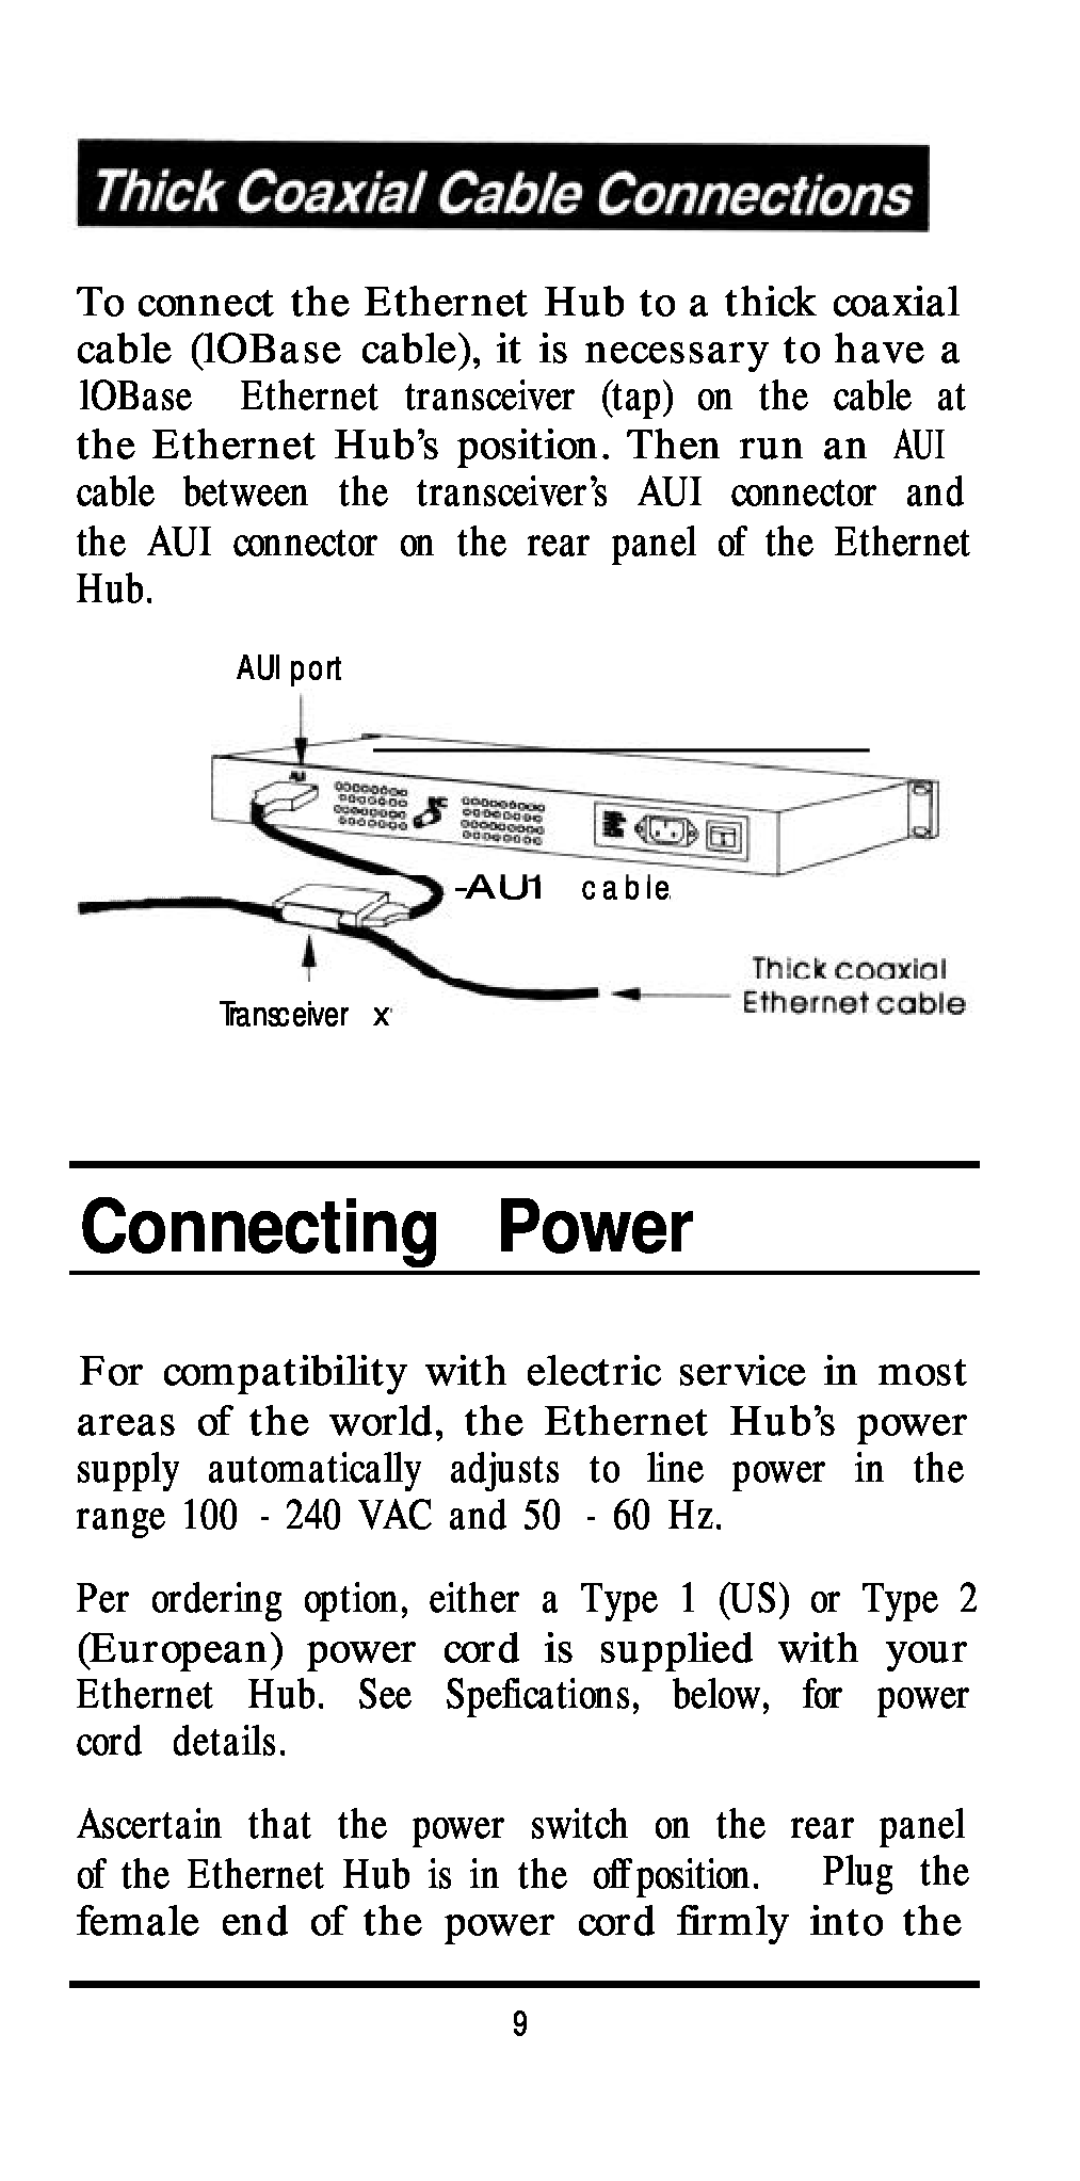 D-Link DE-824TP, DE-81 6TP, DE81 2TP+ manual Connecting Power, AUI port AU1 c a b l e Transceiver 